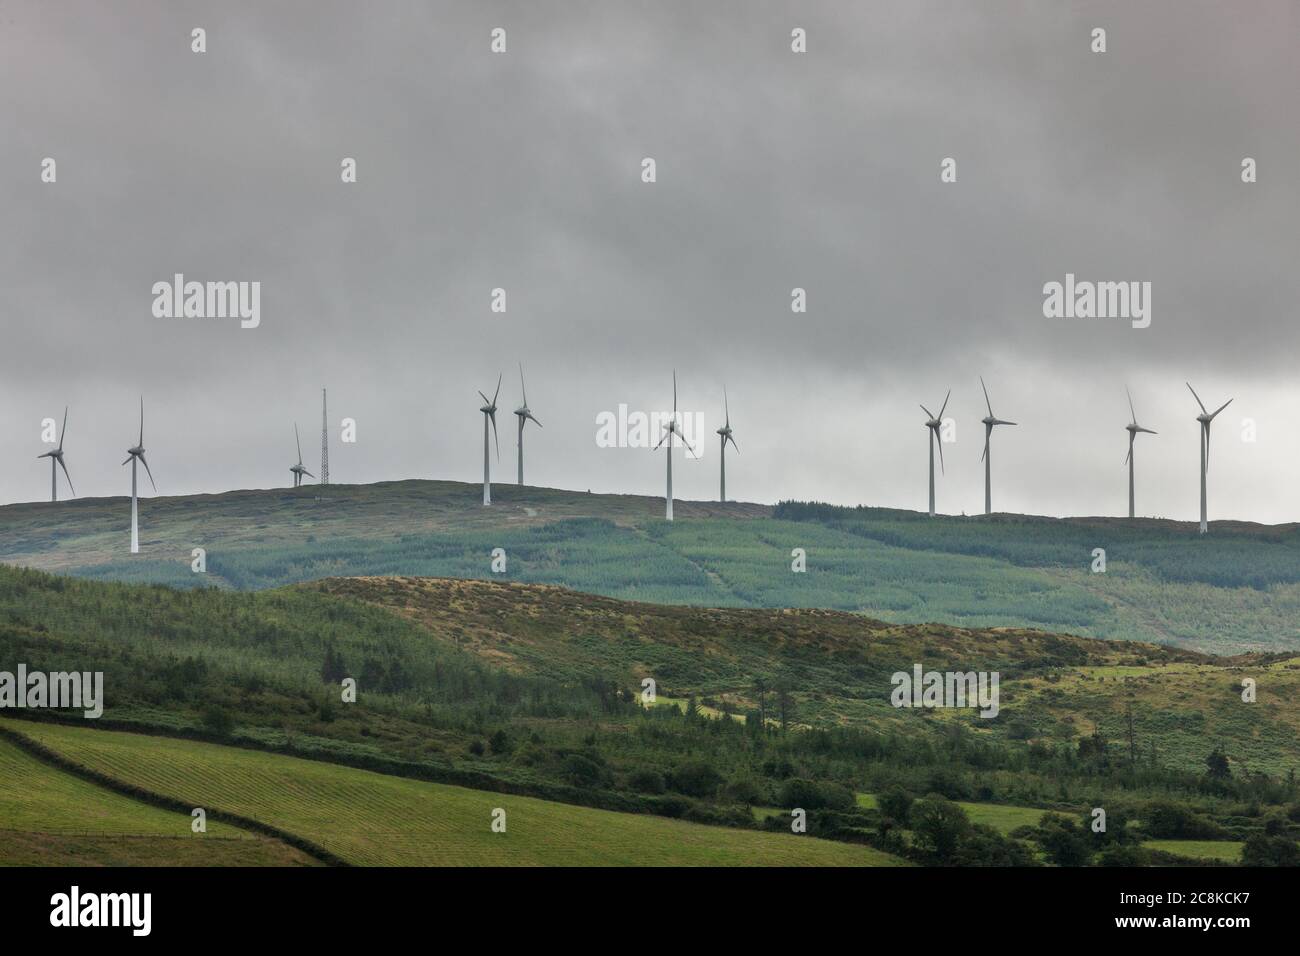 Bantry, Cork, Irlanda. 25 luglio 2020. Un importante programma per le energie rinnovabili, in cui lo Stato spende miliardi per abbandonare i combustibili fossili, è stato approvato dalla Commissione europea. La commissione ha appena annunciato che il programma di sostegno all’elettricità rinnovabile (RESS), previsto dall’Irlanda, si era dimostrato accettabile in base alle norme sugli aiuti di Stato. "La misura contribuirà agli obiettivi ambientali dell'UE senza falsare indebitamente la concorrenza", ha affermato la commissione in una dichiarazione. L'immagine mostra una fattoria eolica fuori Bantry, Co. Cork, Irlanda.- credito; David Creedon / Alamy Live News Foto Stock